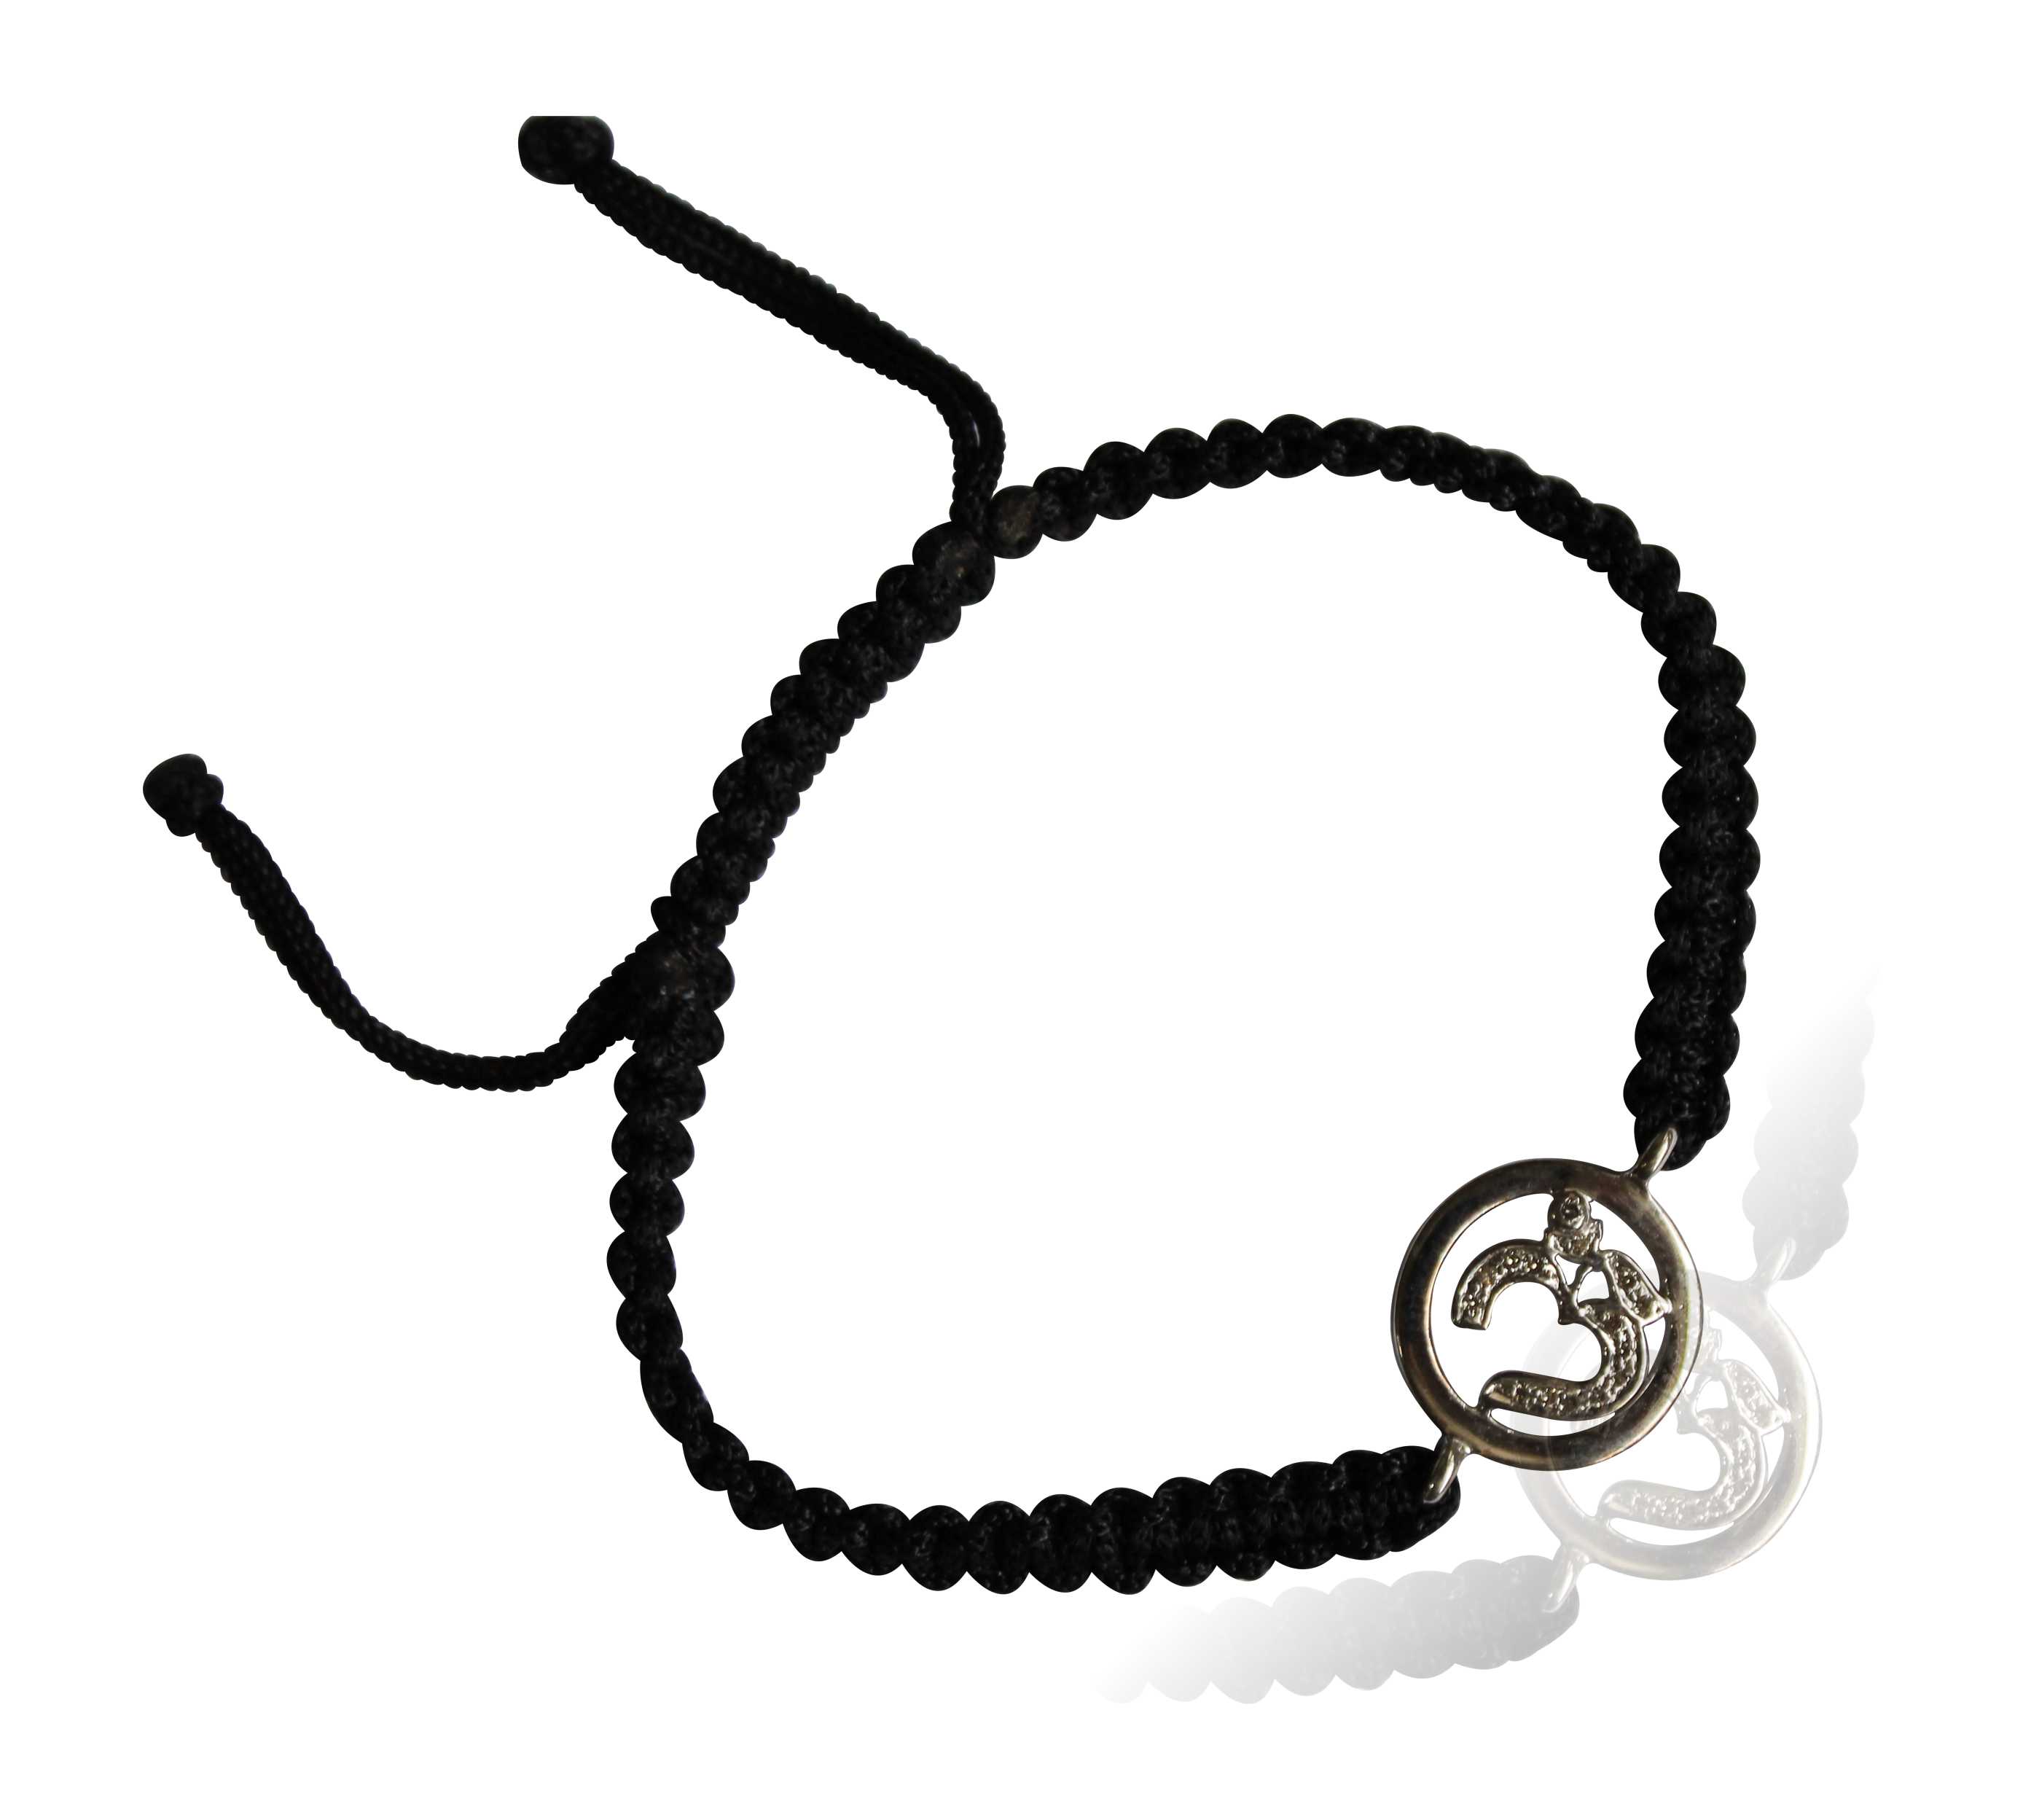 Auspicious Om Bracelet in Silver on adjustable thread for men - Jewelslane  - 1620689